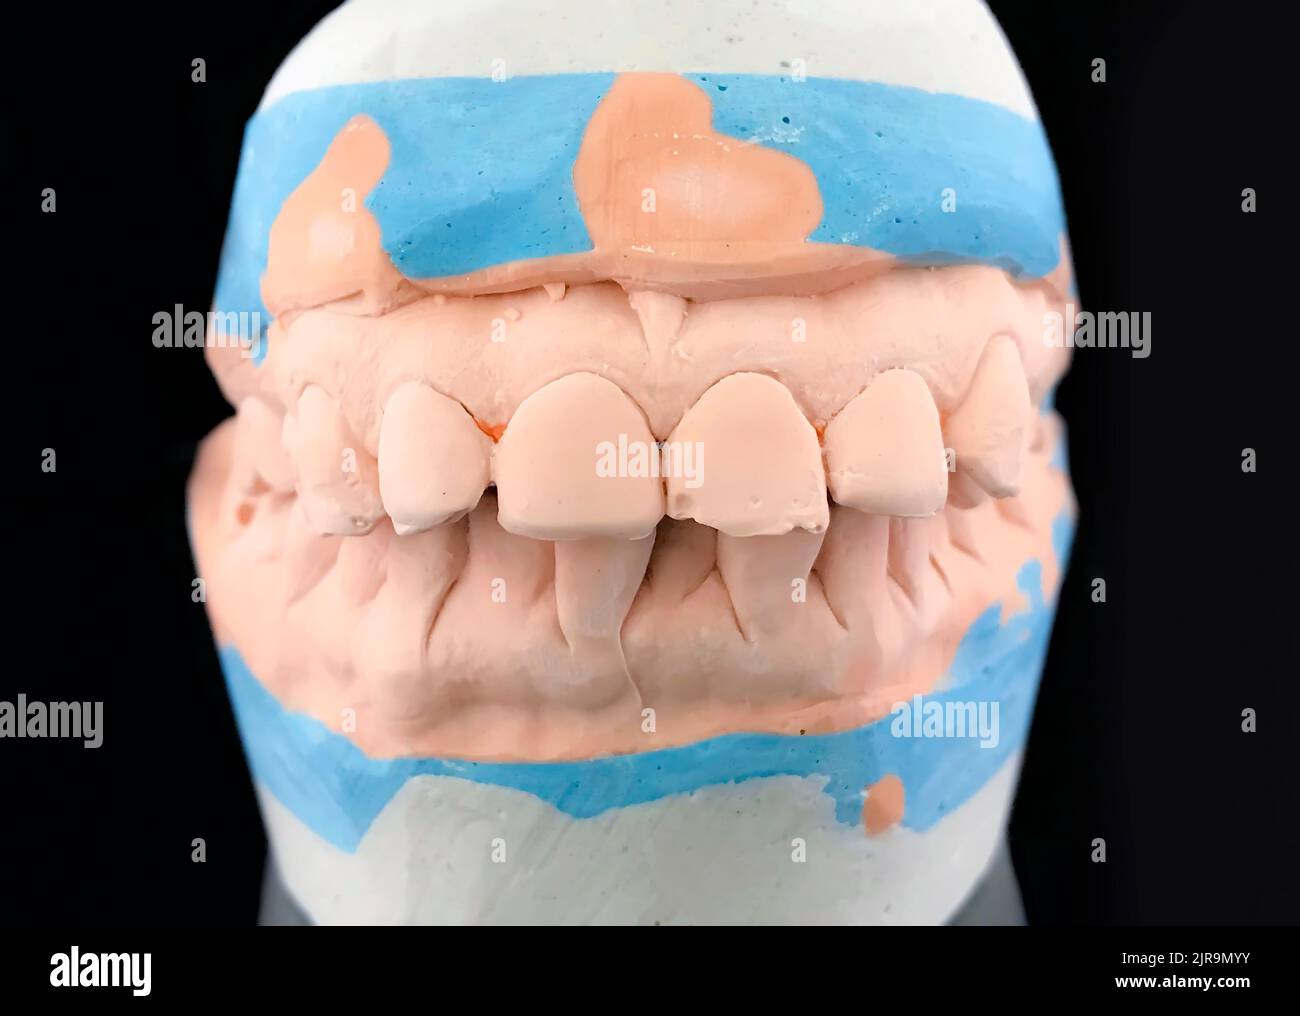 Modello di colata in gesso su sfondo nero. Chiudere la muffa di intonaco dentale del dentista. Vista frontale. Messa a fuoco selettiva. Ganascia inferiore e superiore in metallo Foto Stock